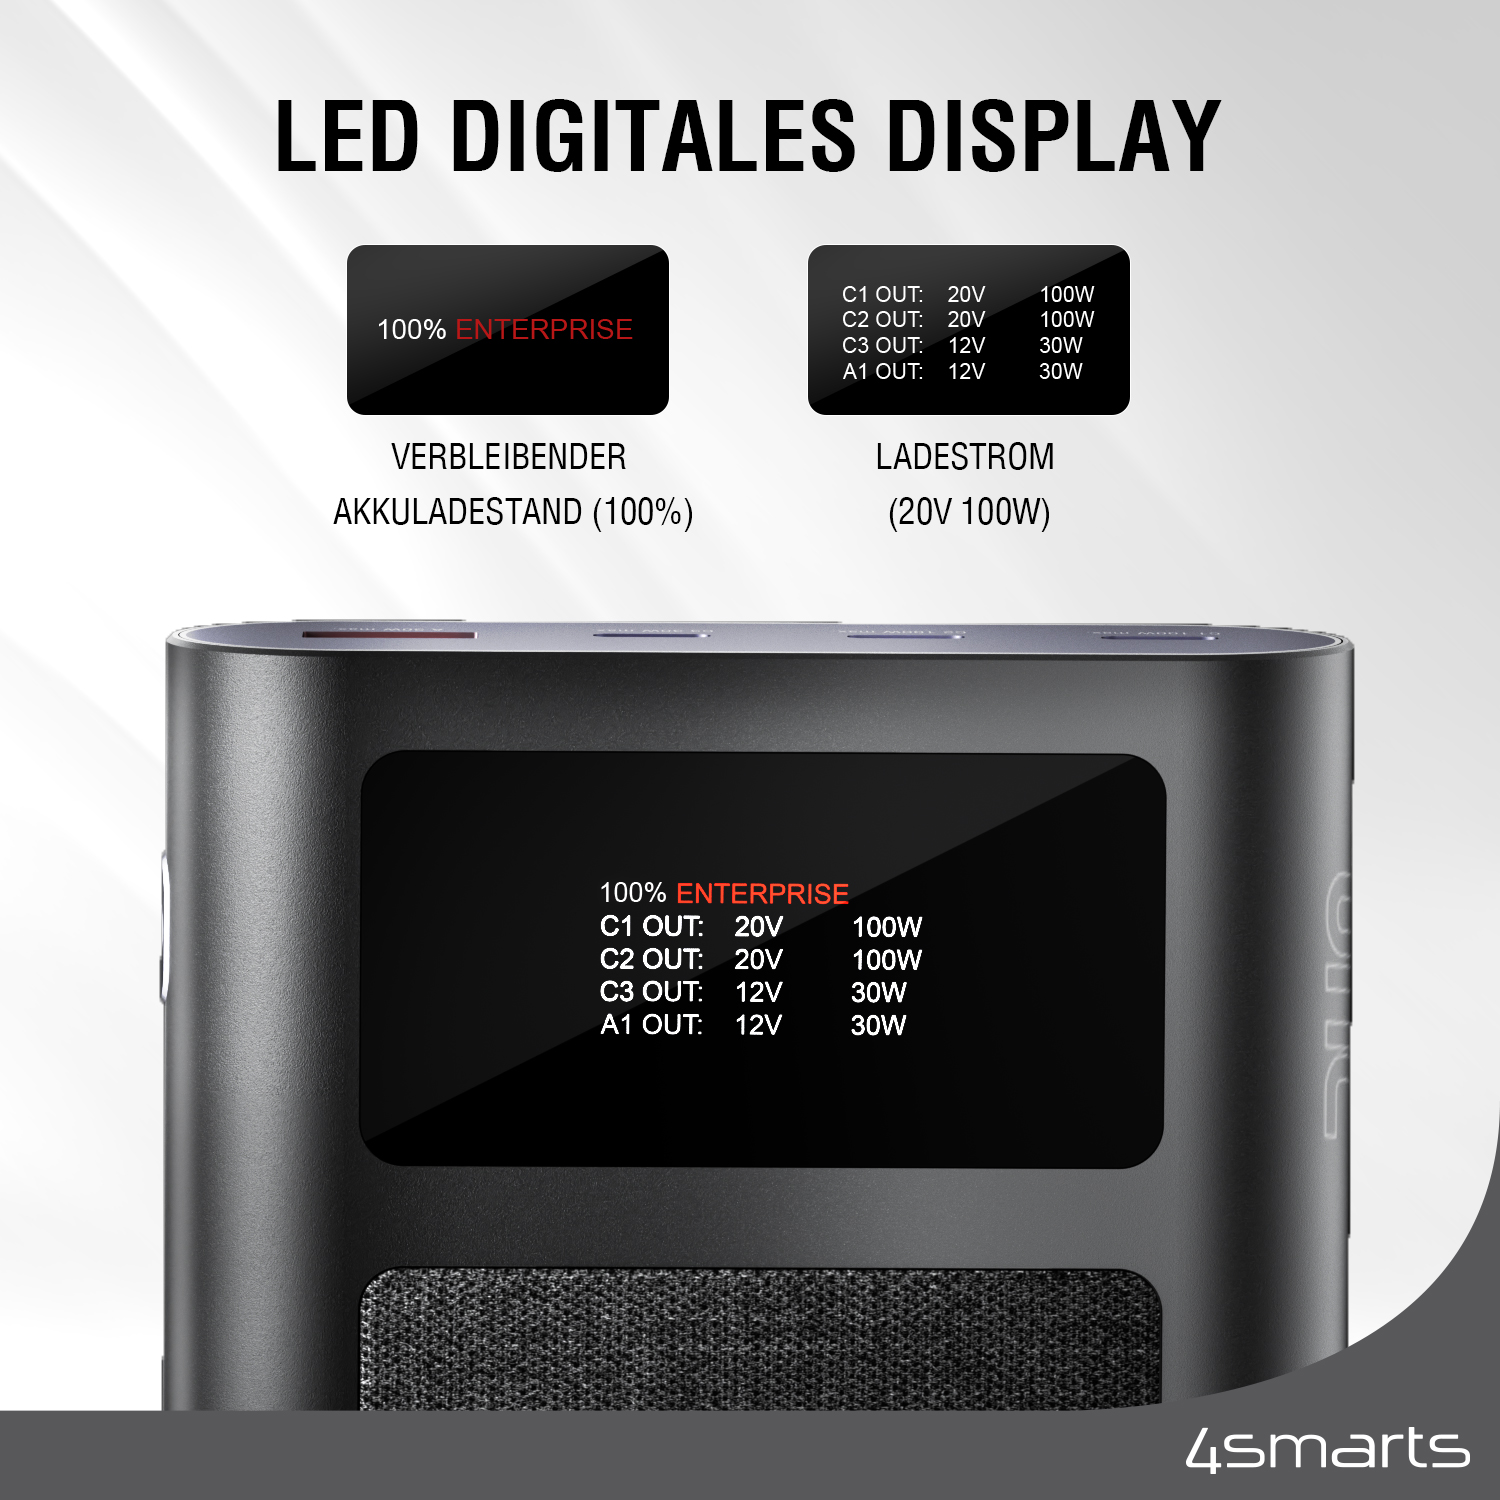 Die 4smarts Enterprise Ultra Powerbank mit 26800mAh verfügt über eine integrierte LED-Digitalanzeige zur Darstellung der verbleibenden Akkuladung und des Ladestroms.